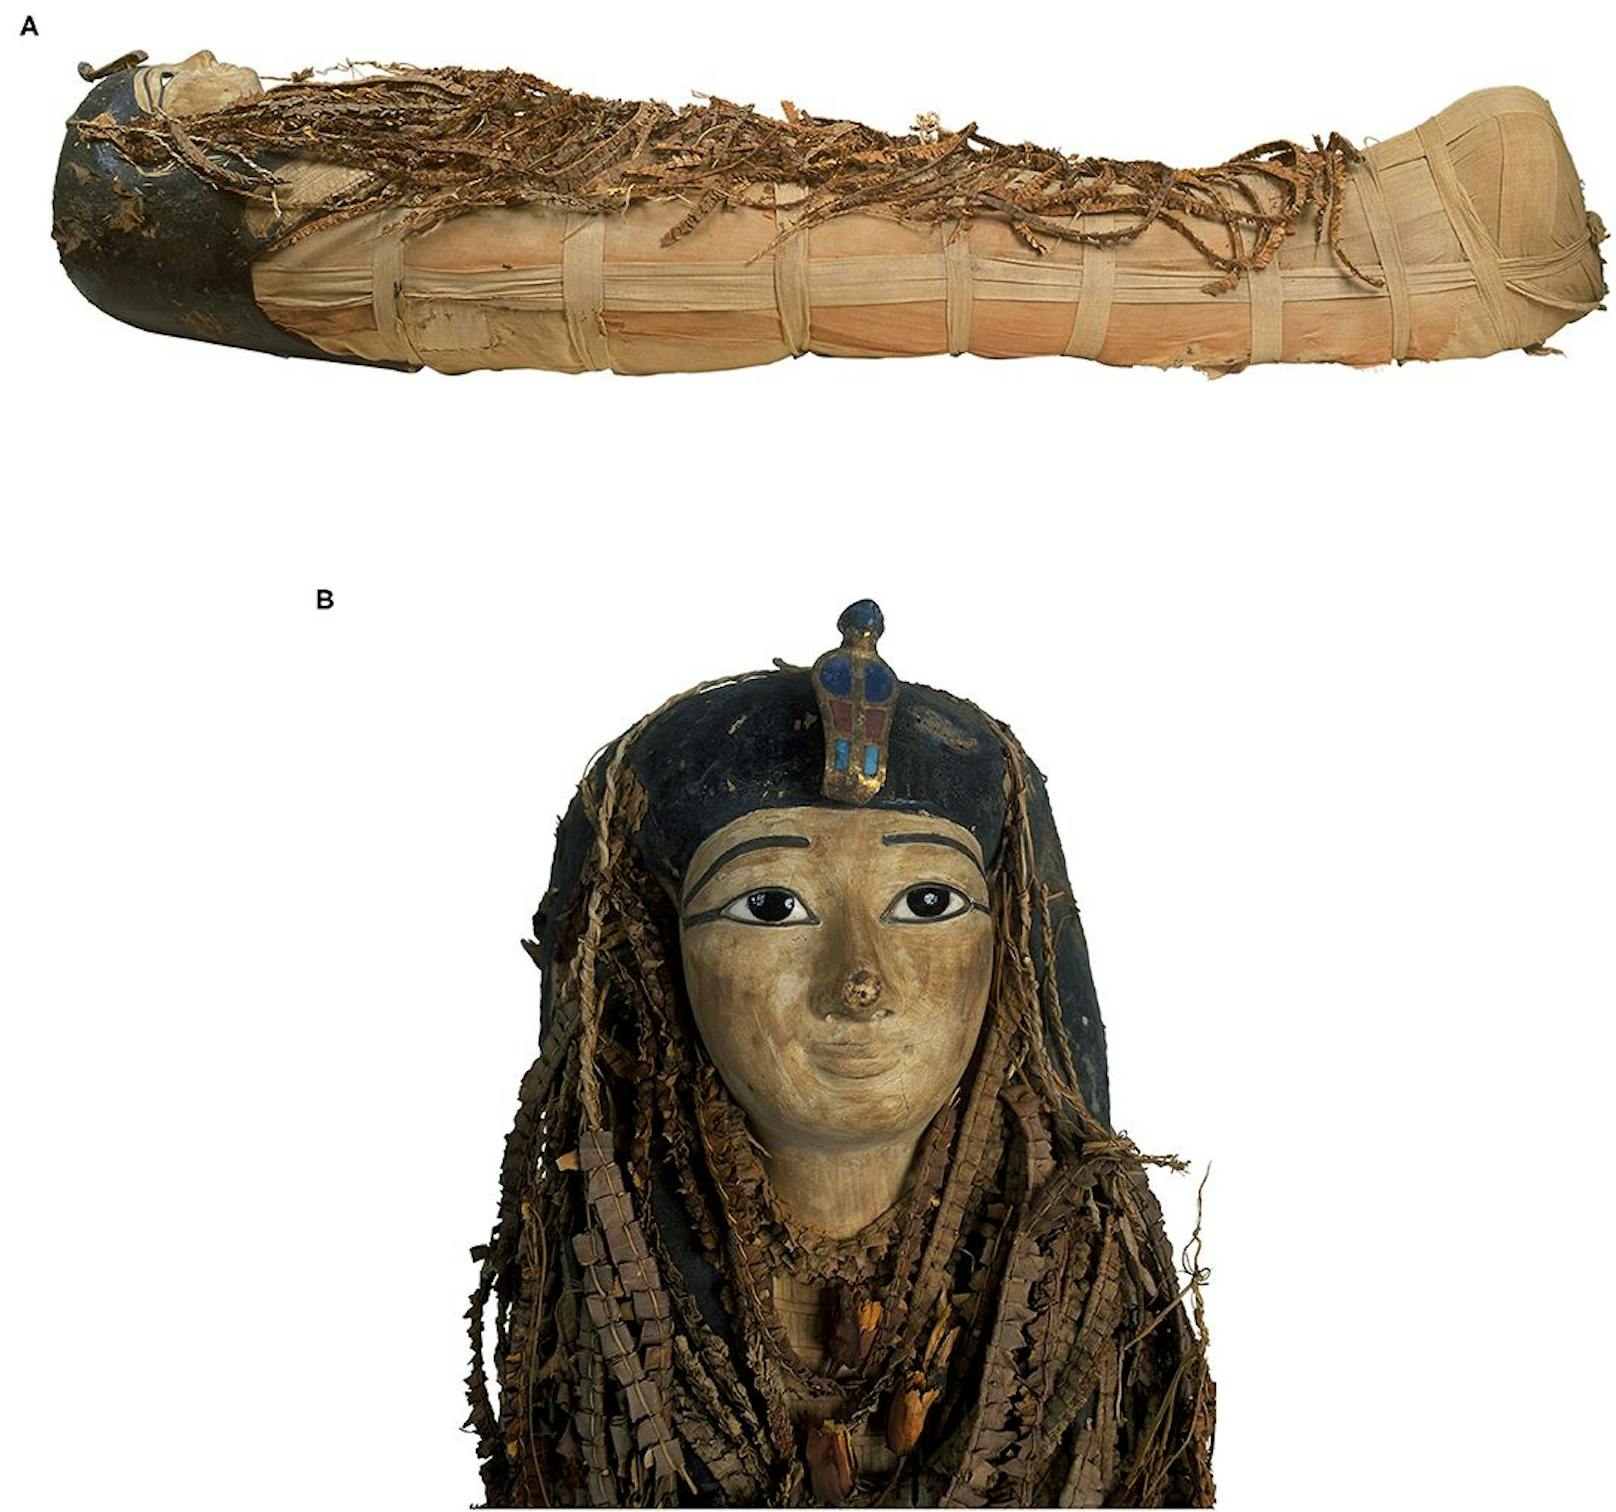 Bild der Mumie des Amenhotep I. <strong>(A)</strong> Das Bild der rechten Seitenansicht der Mumie des Amenhotep I zeigt den Körper vollständig in Leinen gehüllt, von Kopf bis Fuß mit Blumengirlanden bedeckt und trägt eine Kopfmaske. <strong>(B)</strong> Bild der Kopfmaske der Mumie von Amenhotep I aus bemaltem Holz und Karton. Das Gesicht ist in schwachem Gelb bemalt. Die Kontur der Augen und Augenbrauen ist schwarz lackiert. In die Augen sind schwarze Pupillen aus Obsidiankristallen eingelegt. Auf der Stirn befindet sich eine separat geschnitzte bemalte Kobra aus bemaltem Holz, eingelegten Steinen und Kartonage. Der Rest der Kopfmaske wird teilweise von Blumengirlanden verdeckt.